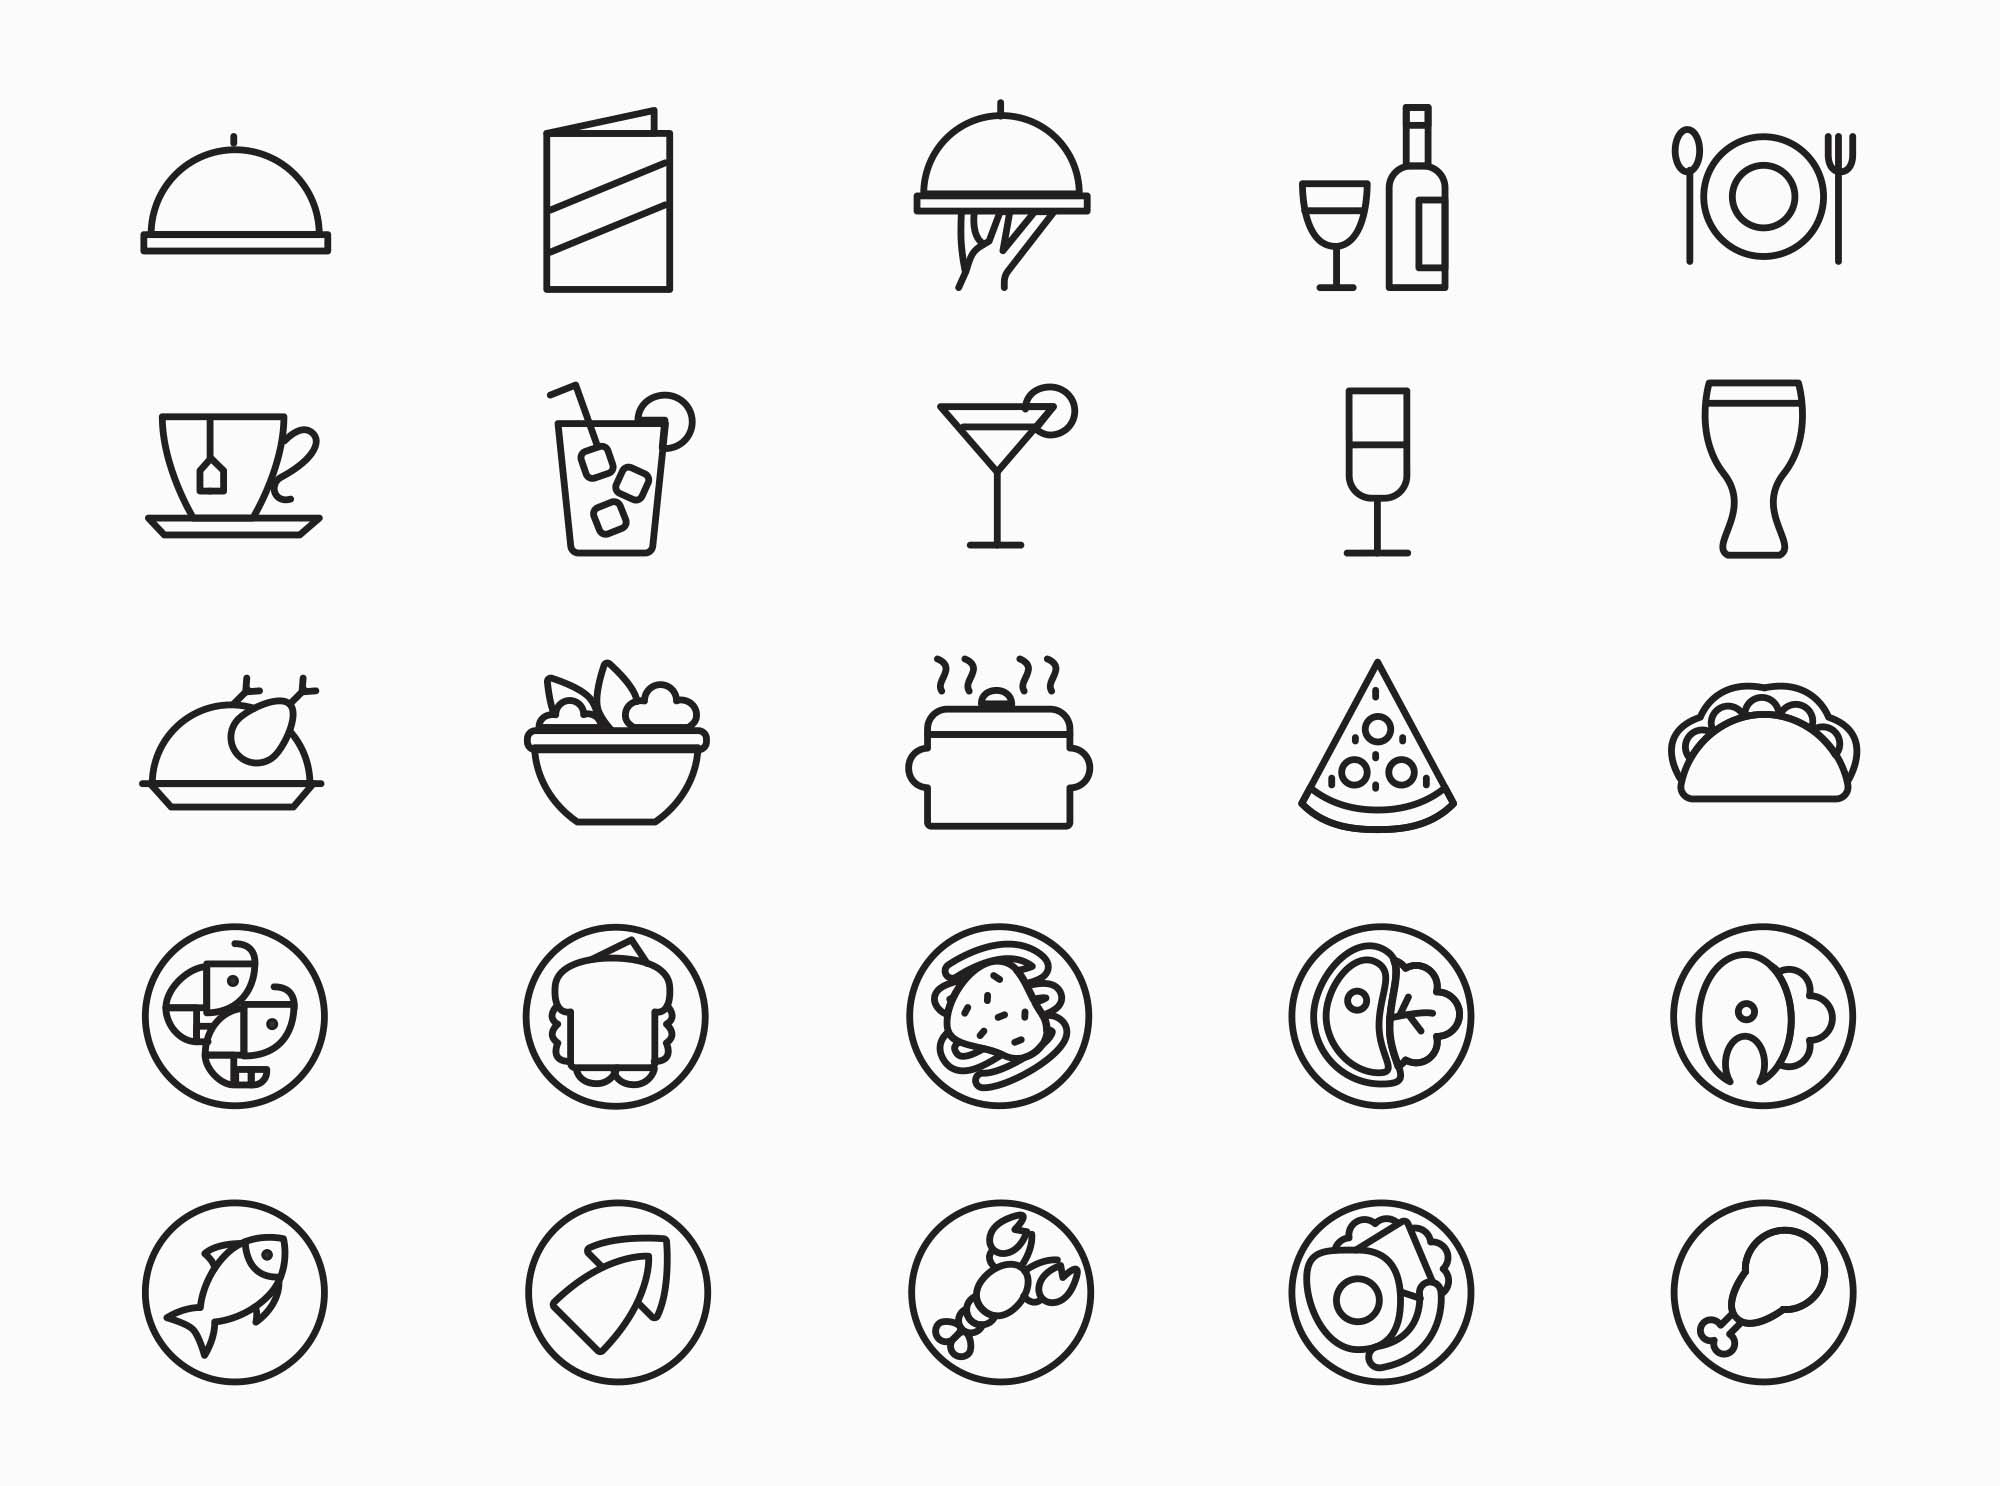 25枚餐厅菜单设计 可用的矢量线性蚂蚁素材精选图标 25 Restaurant Menu Icons插图(1)